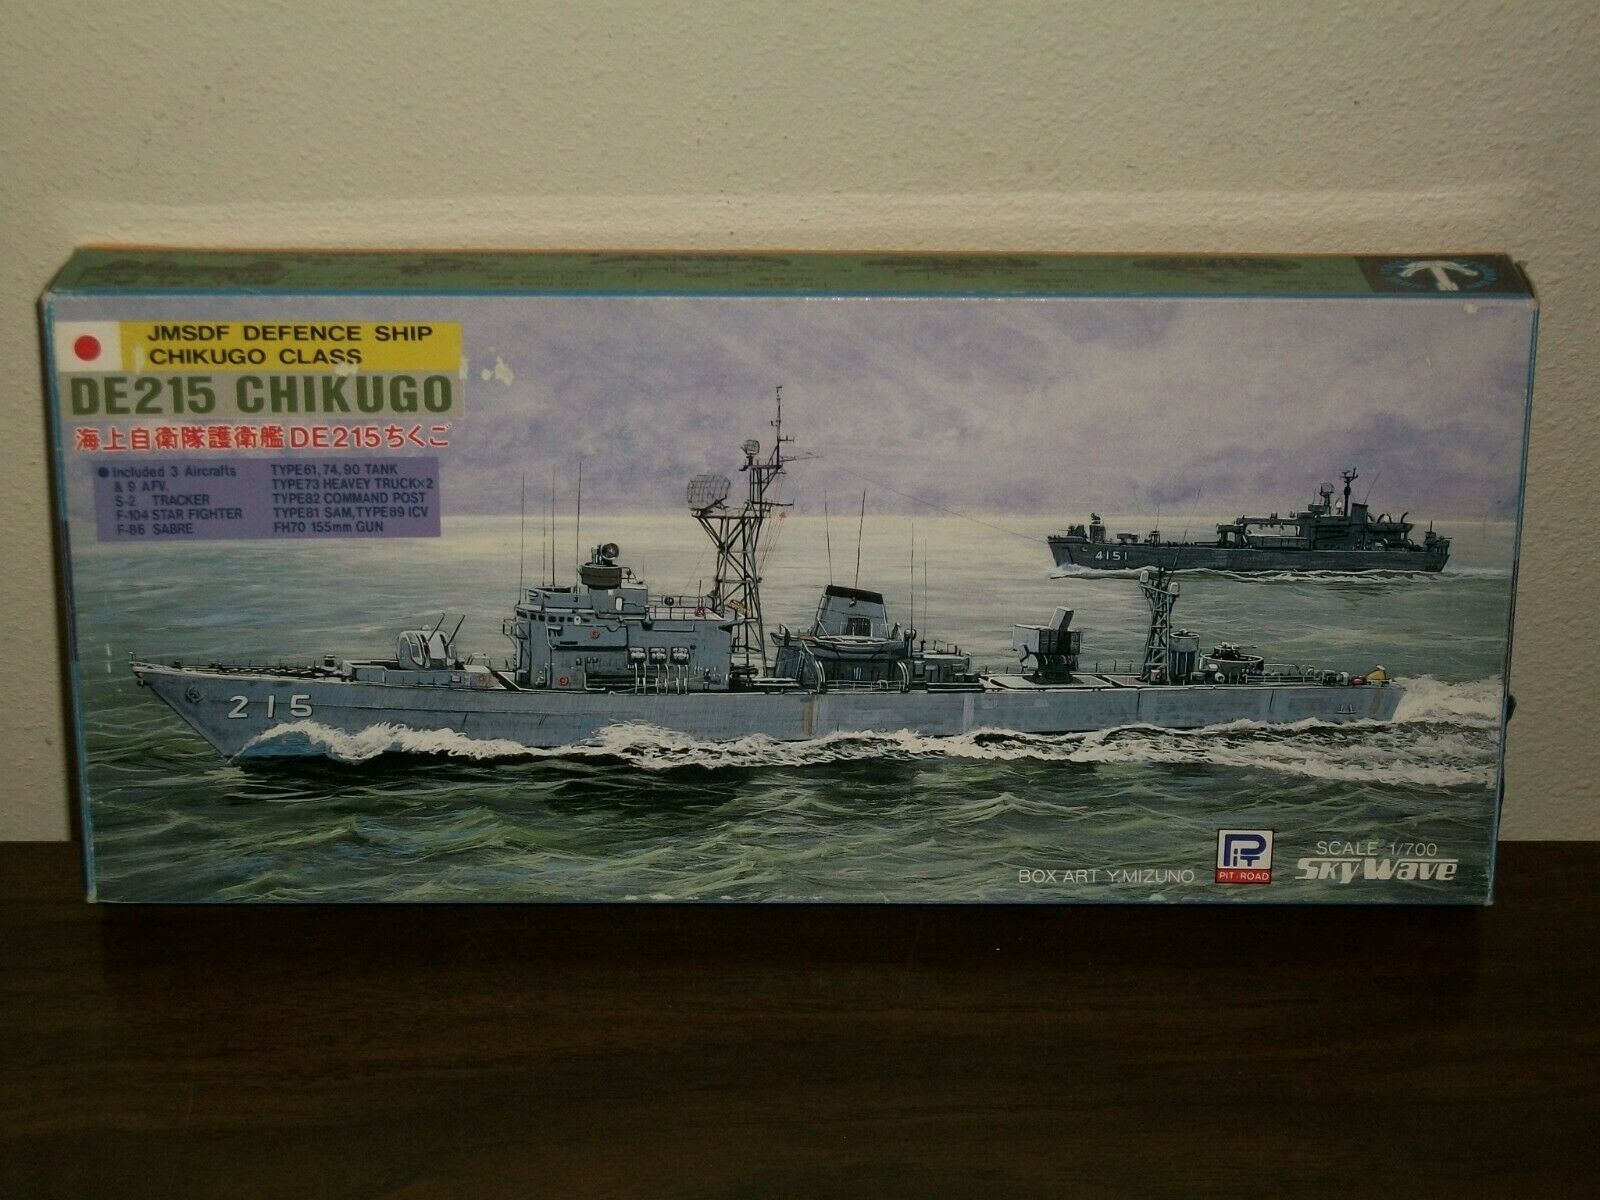 Pit Road Skywave 1/700 Scale De215 Chikugo, Jmsdf Defense Ship Chikugo Class